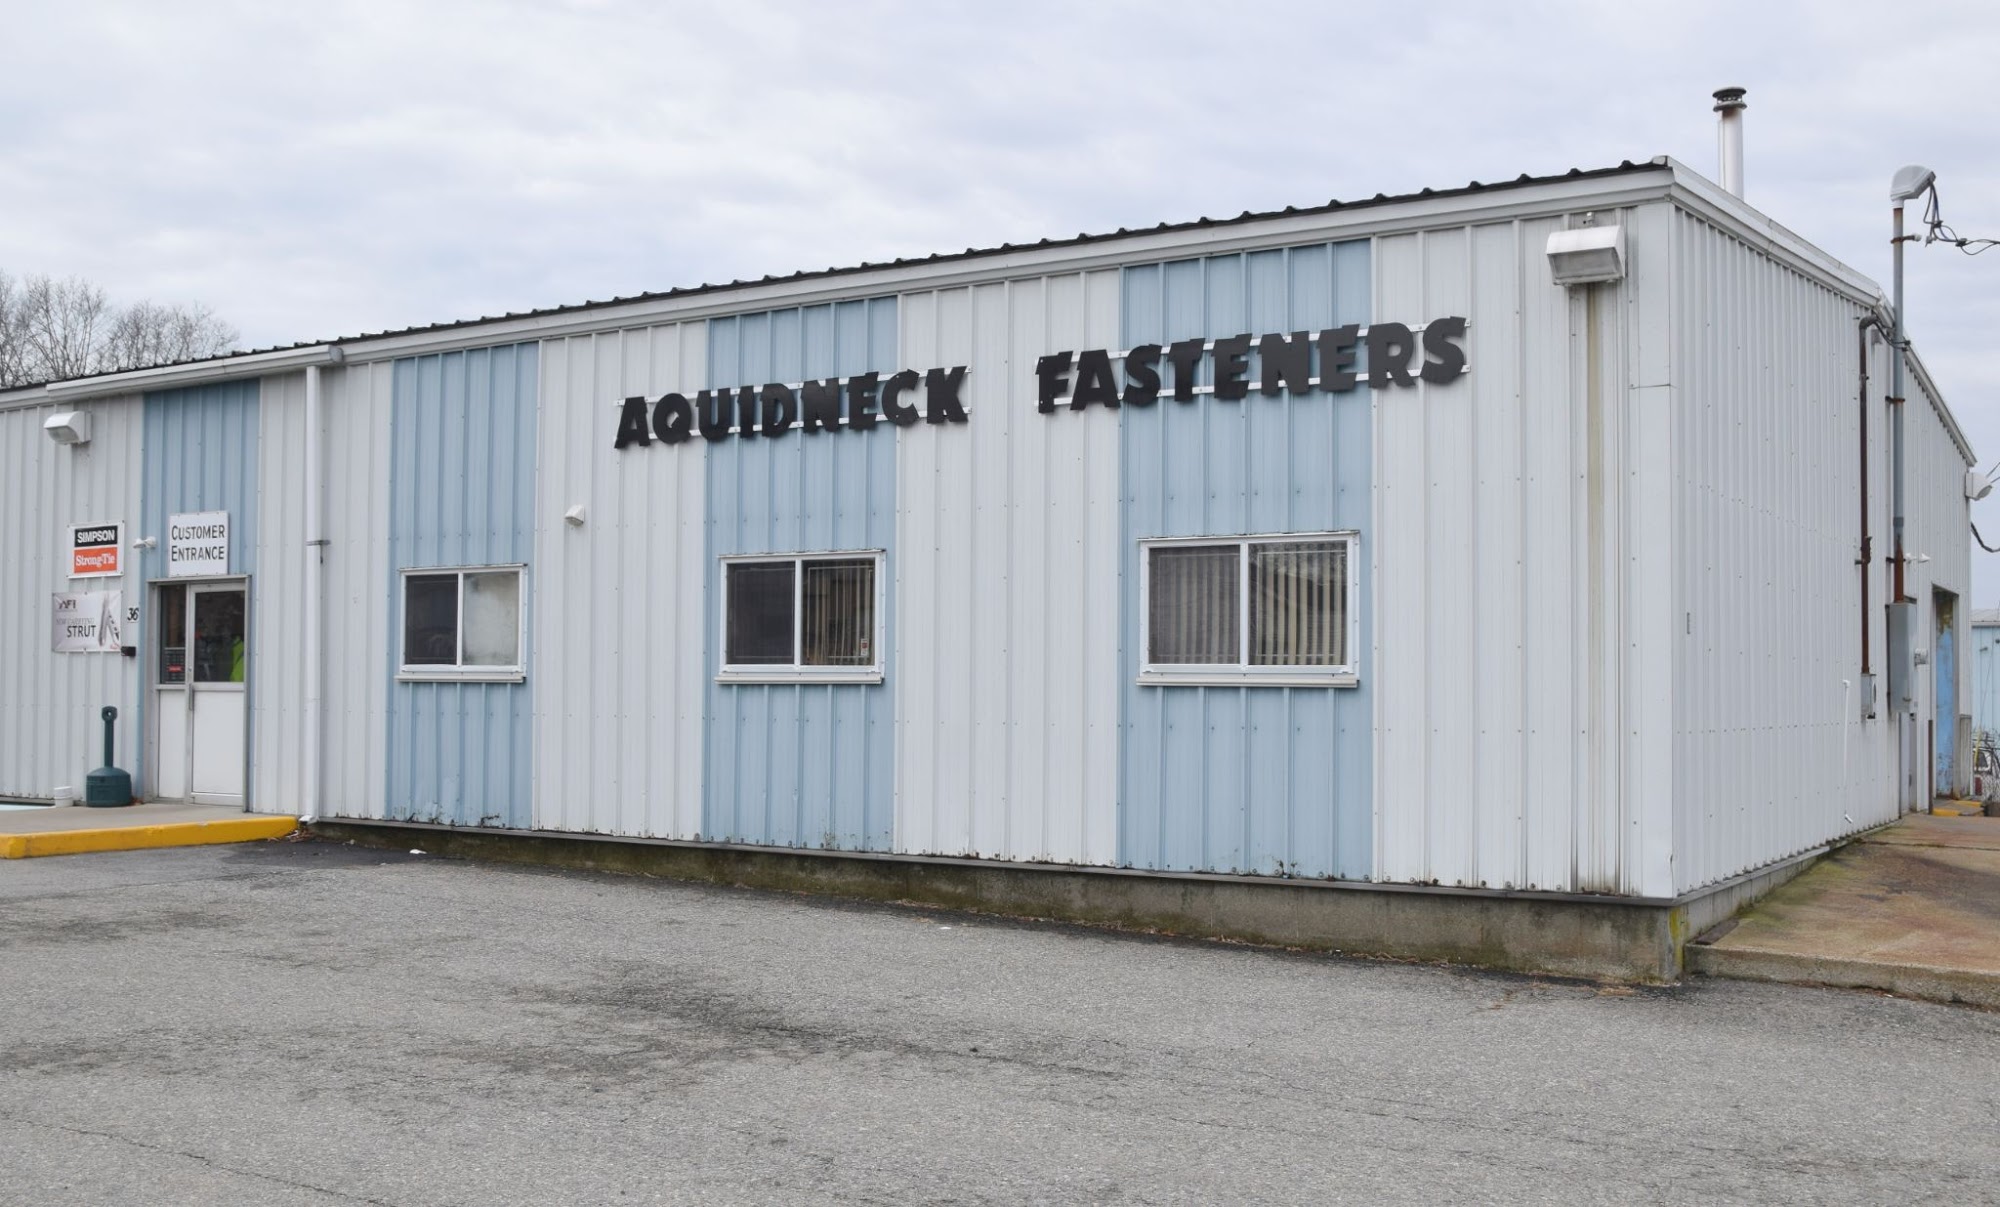 Aquidneck Fasteners, Inc.